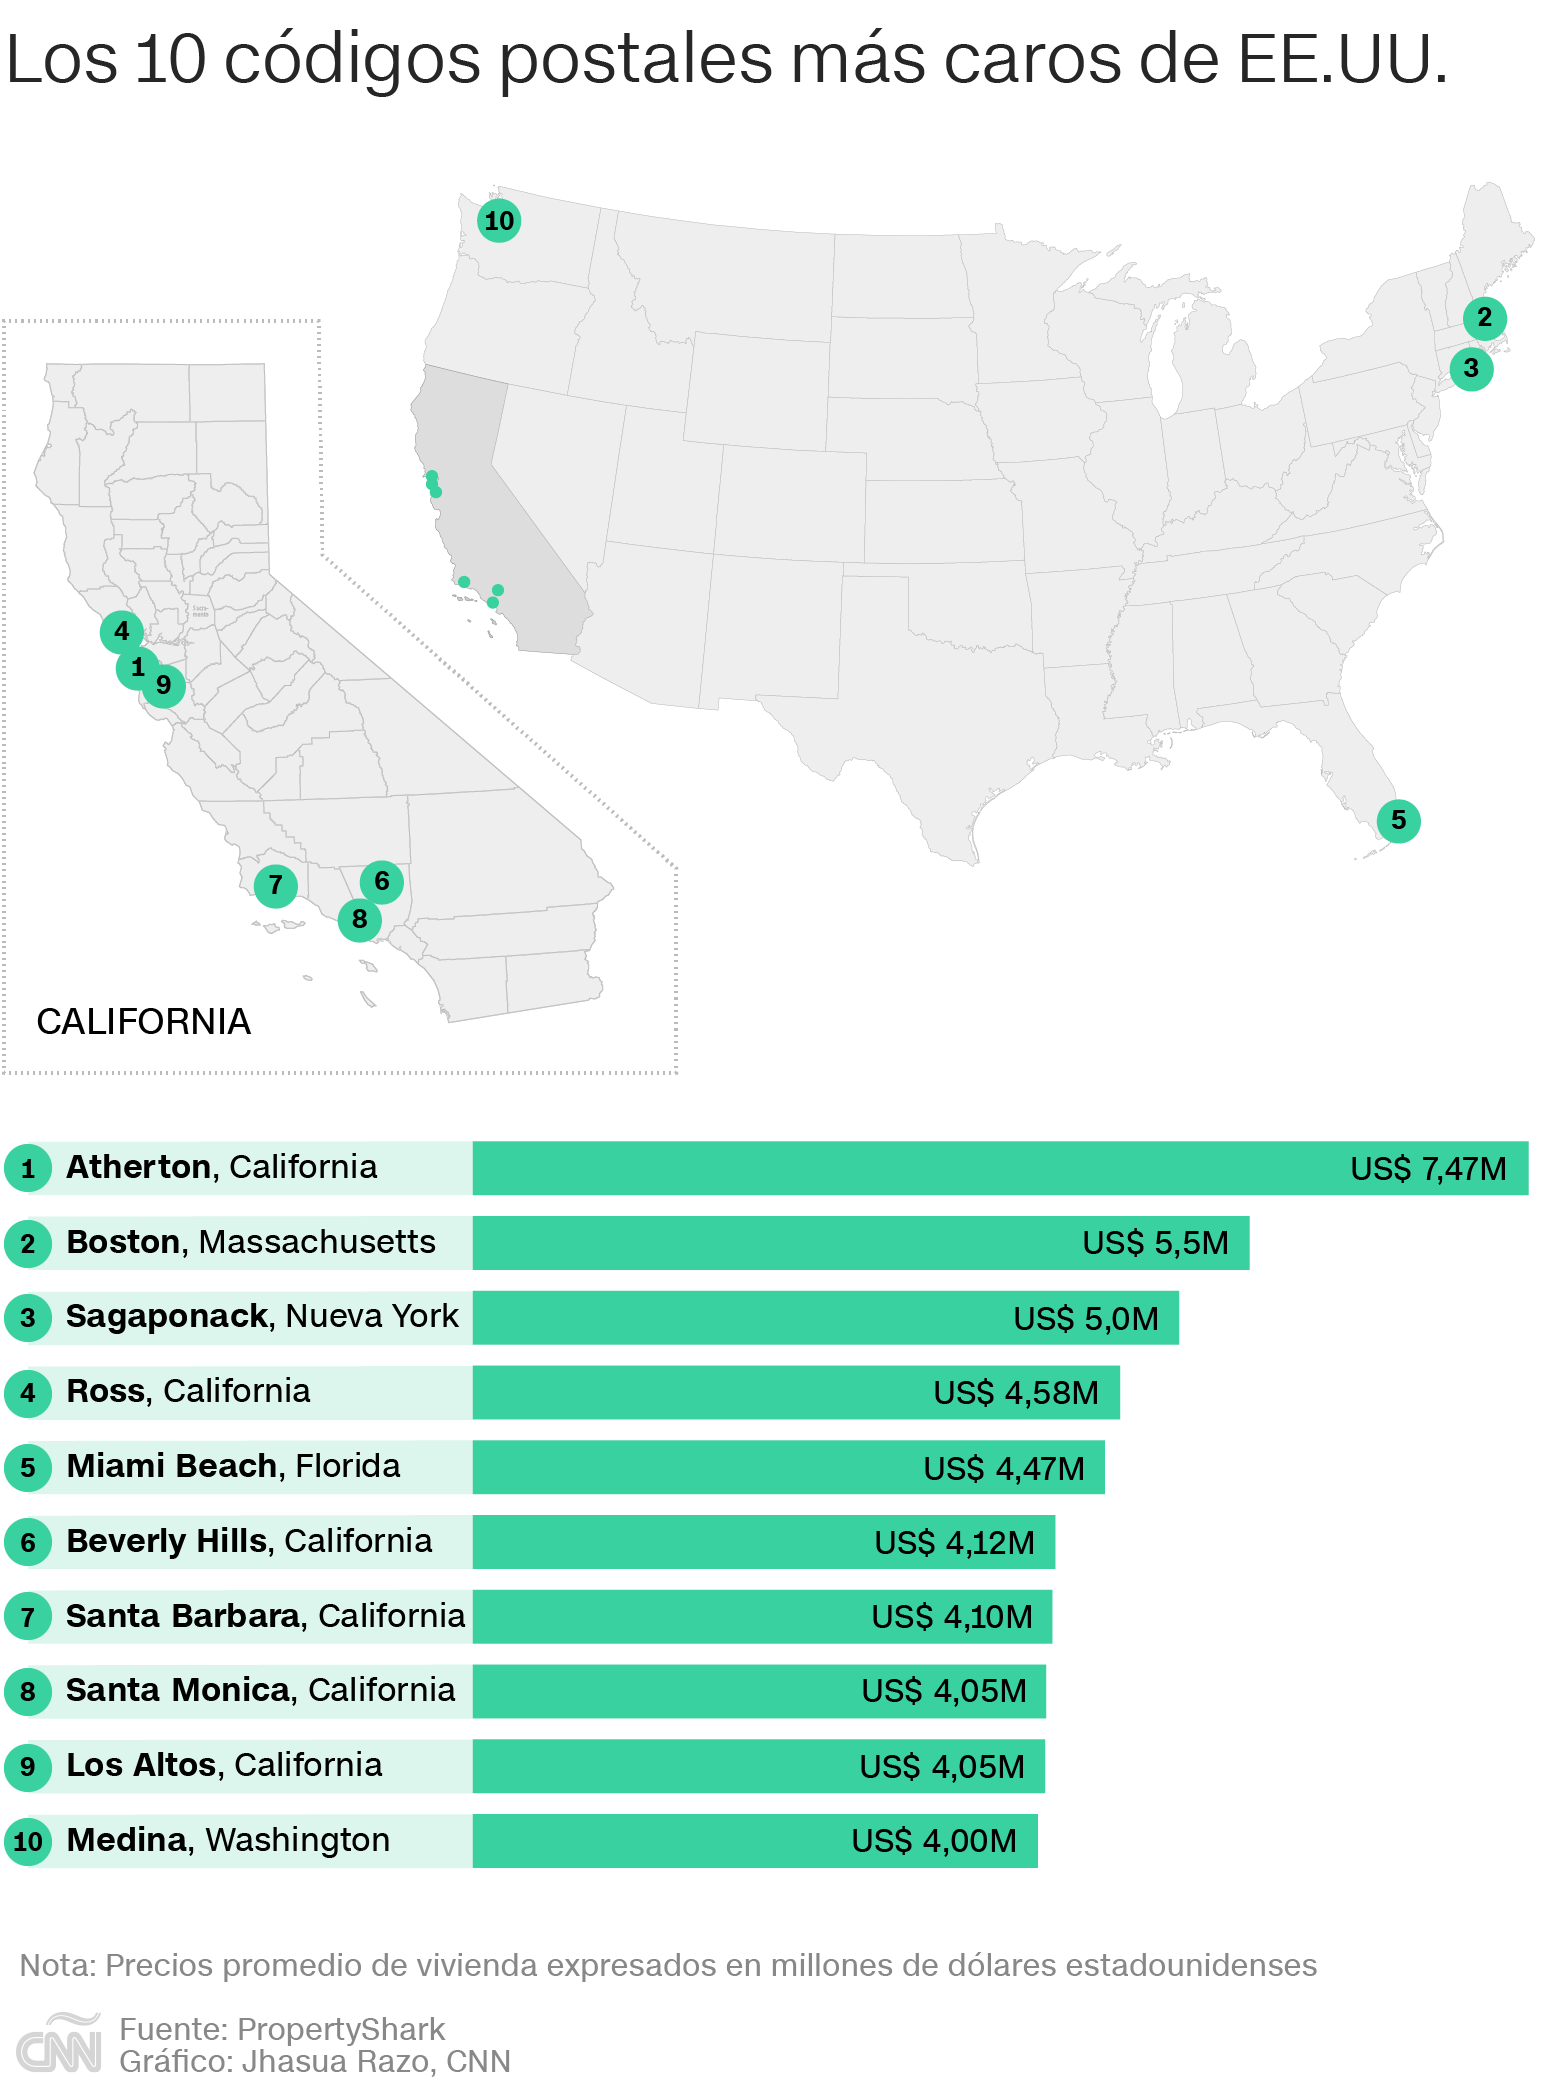 ¿Dónde es más caro vivir en EEUU